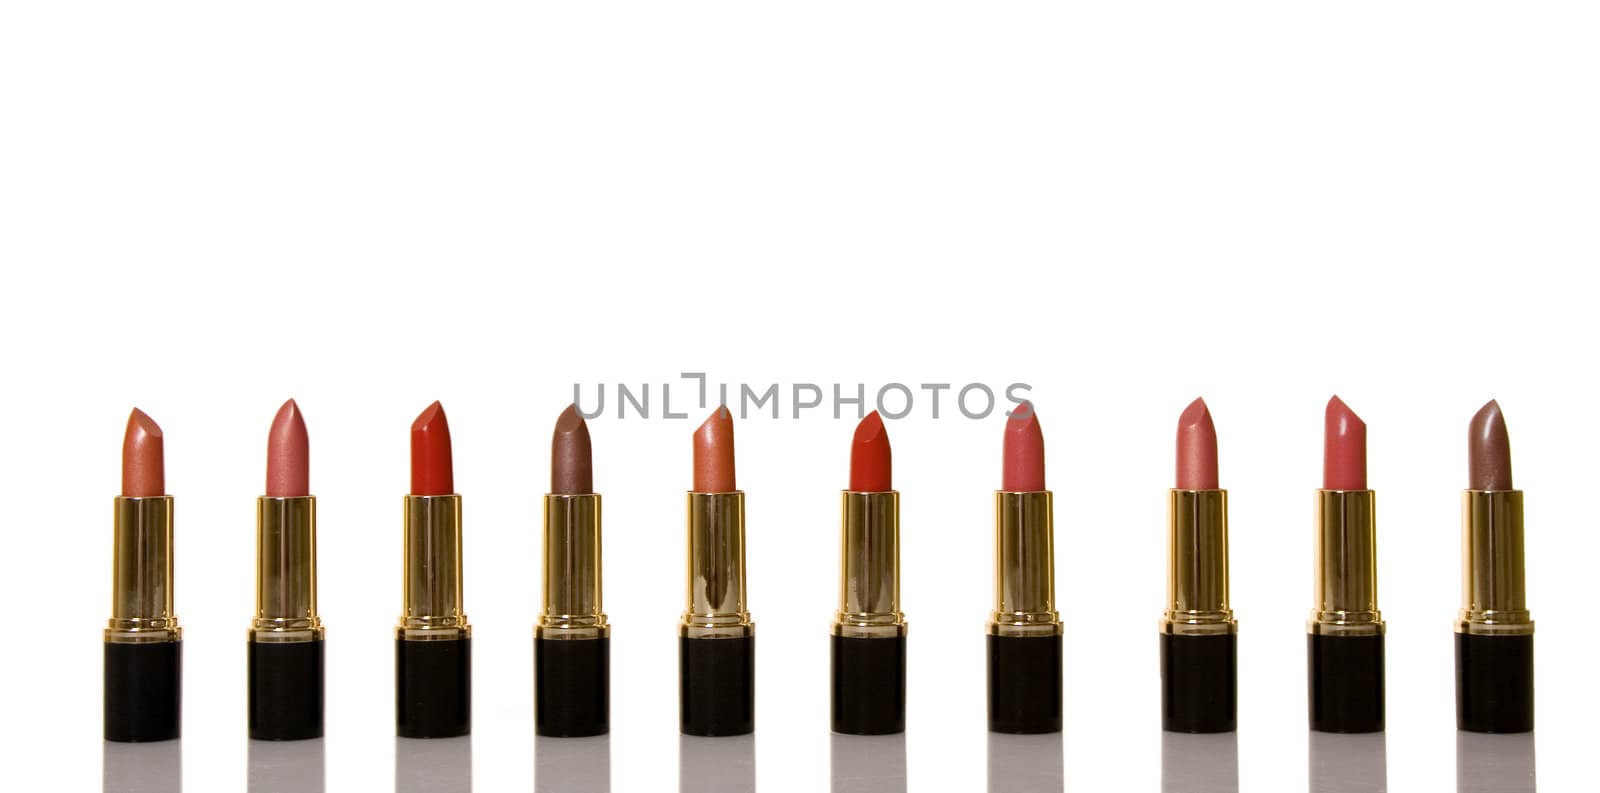 glamor shiny lipsticks isolated on white background